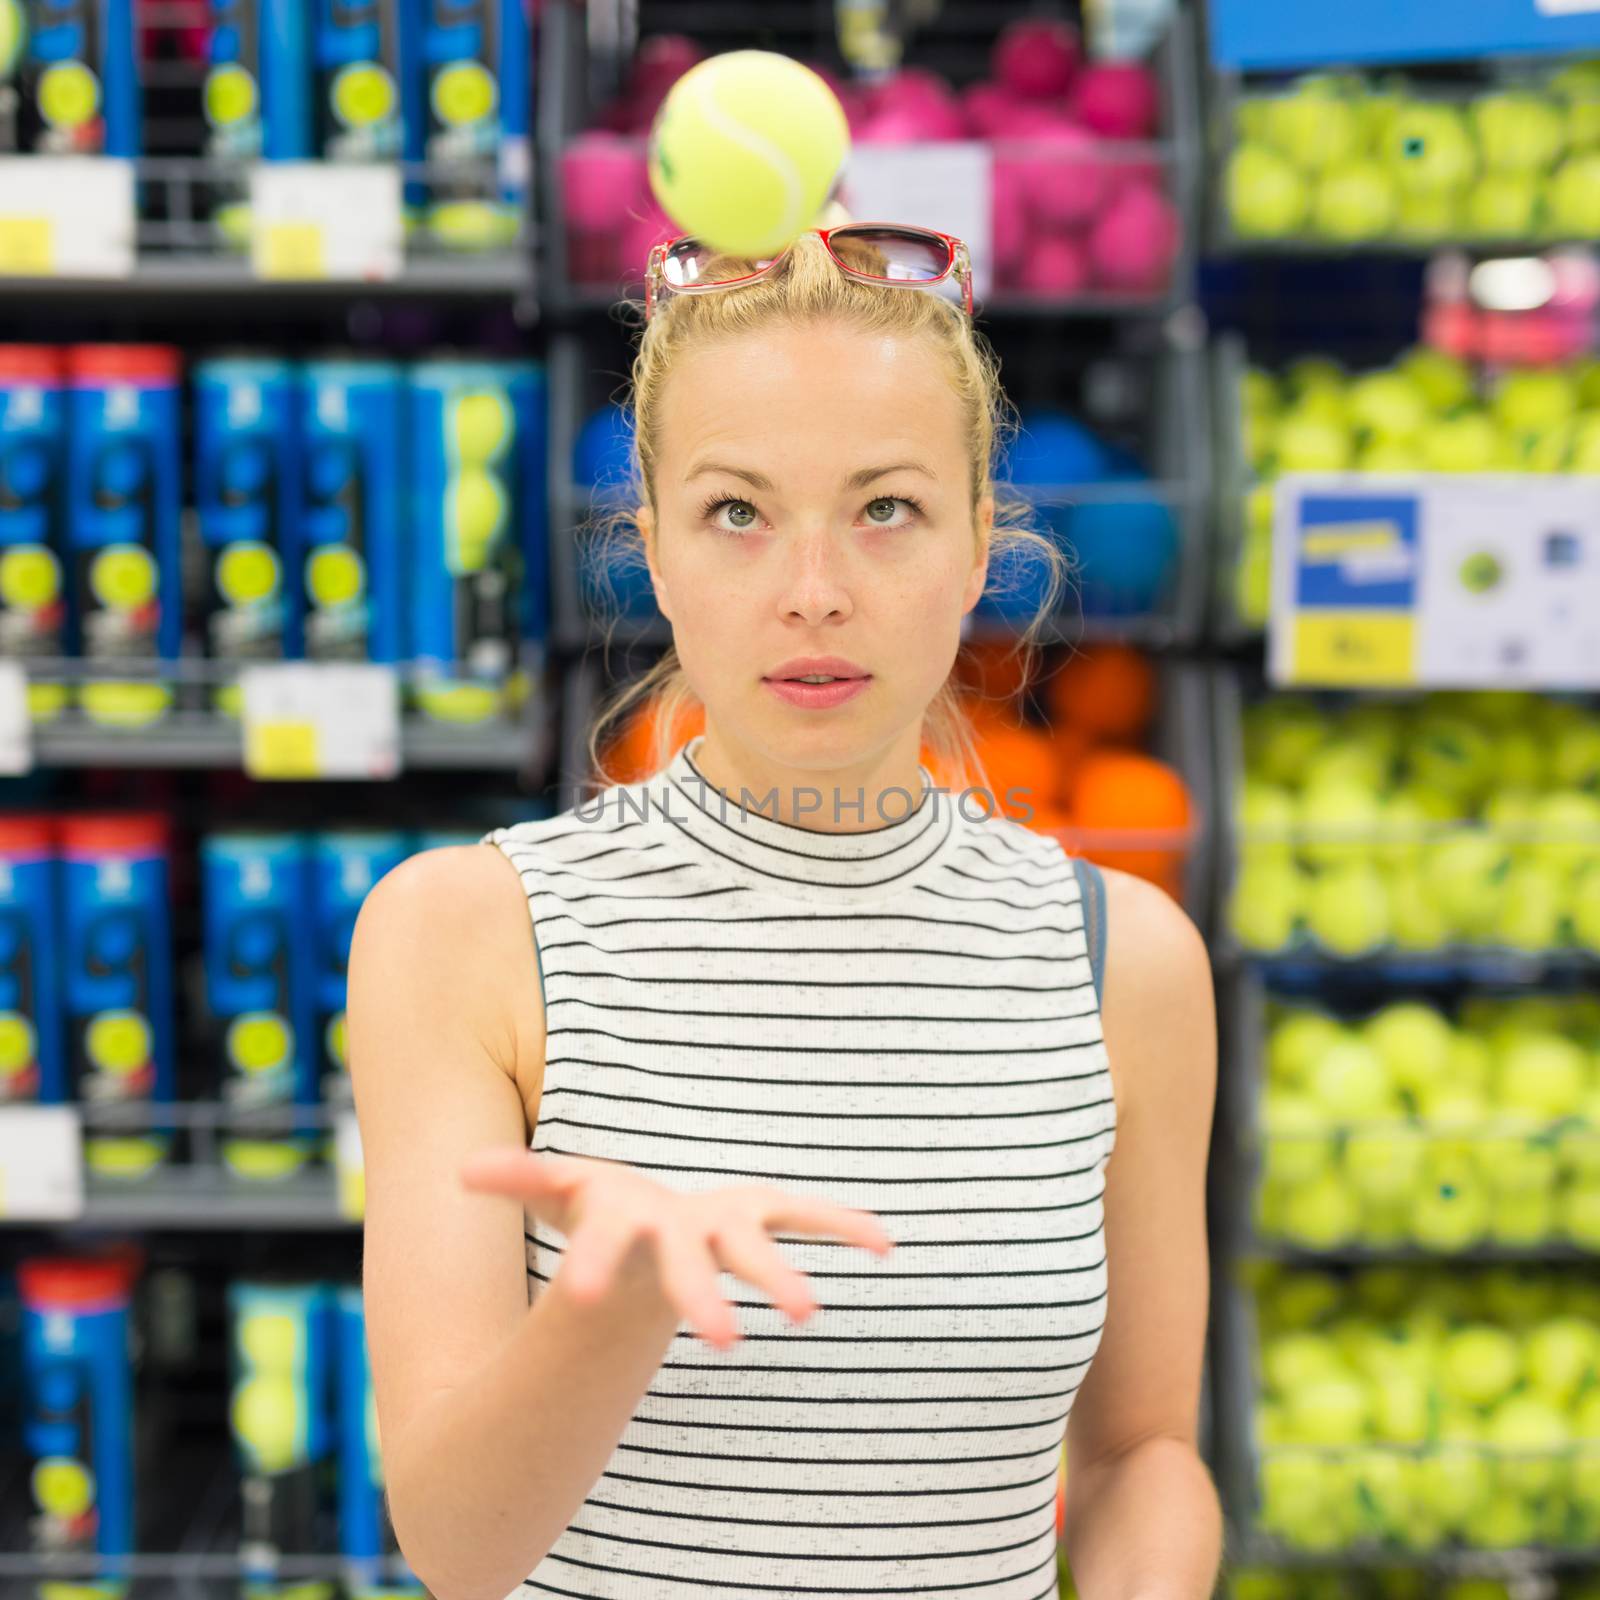 Woman shopping tennis balls in sportswear store. by kasto